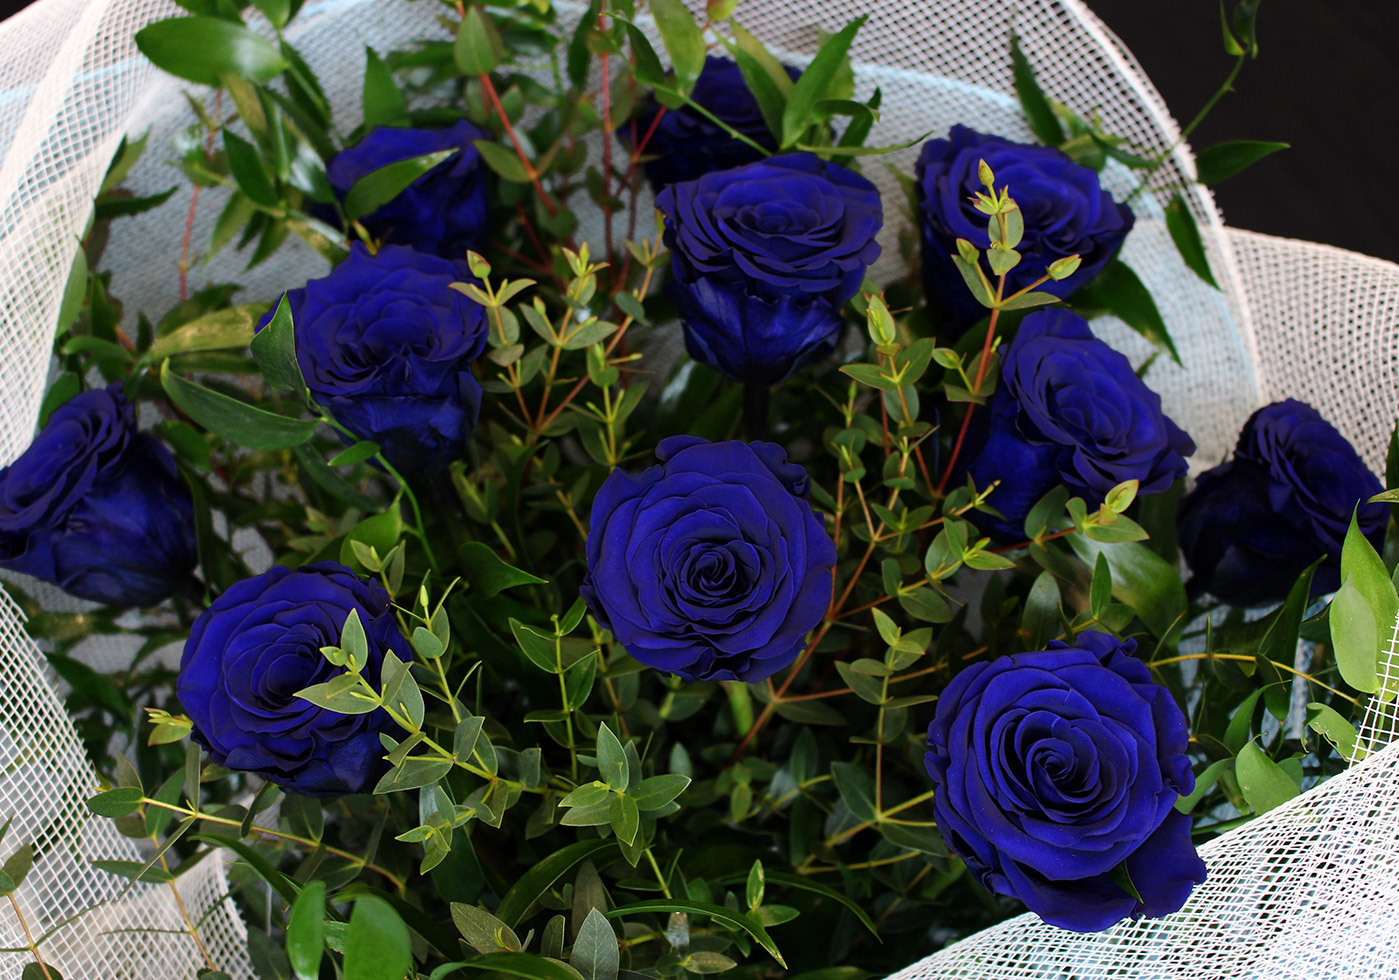 Une autre vue du bouquet de roses bleues